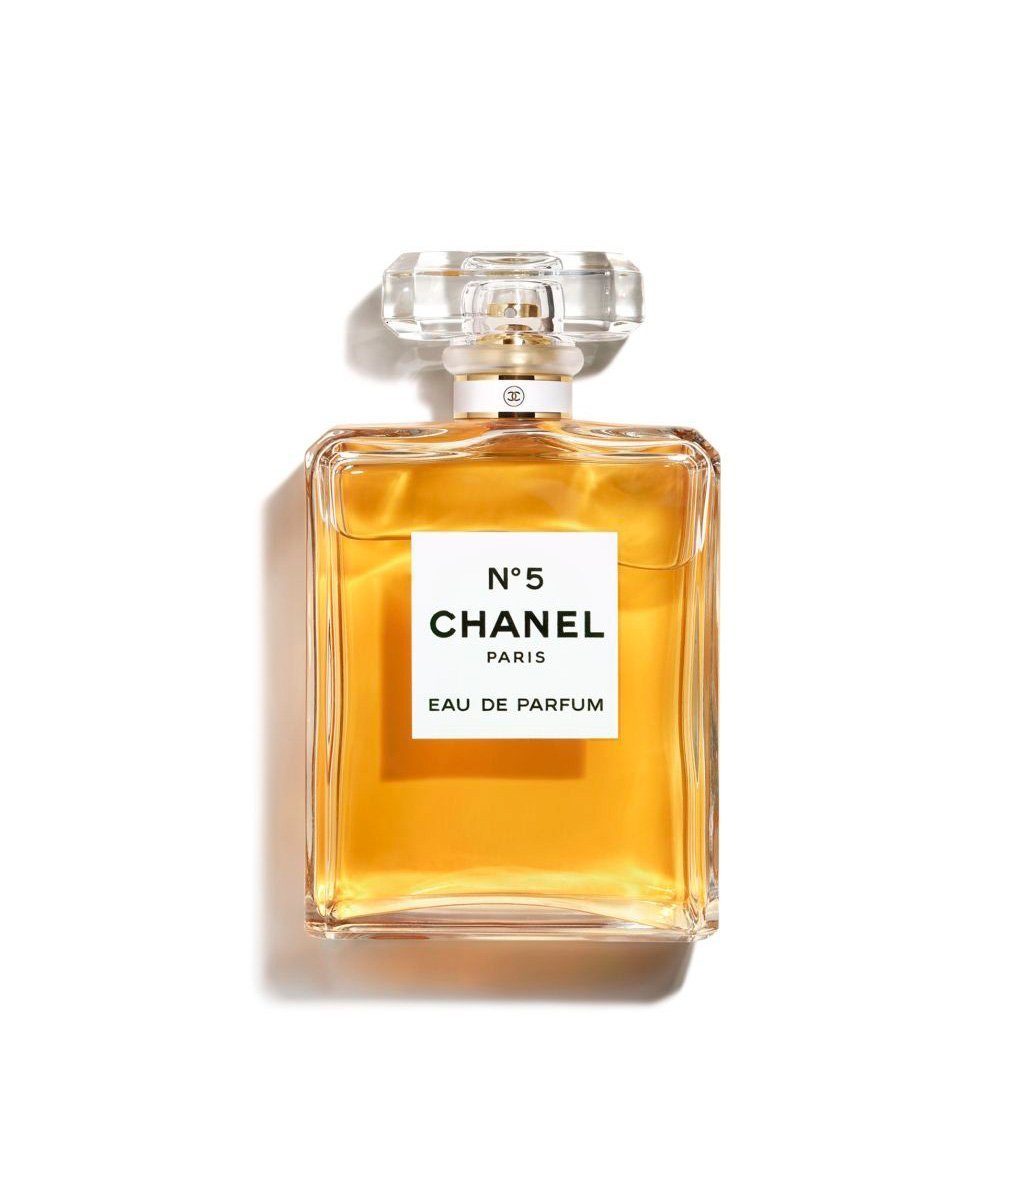 CHANEL Eau de Parfum CHANEL N°5 No5 EAU DE PARFUM ZERSTÄUBER